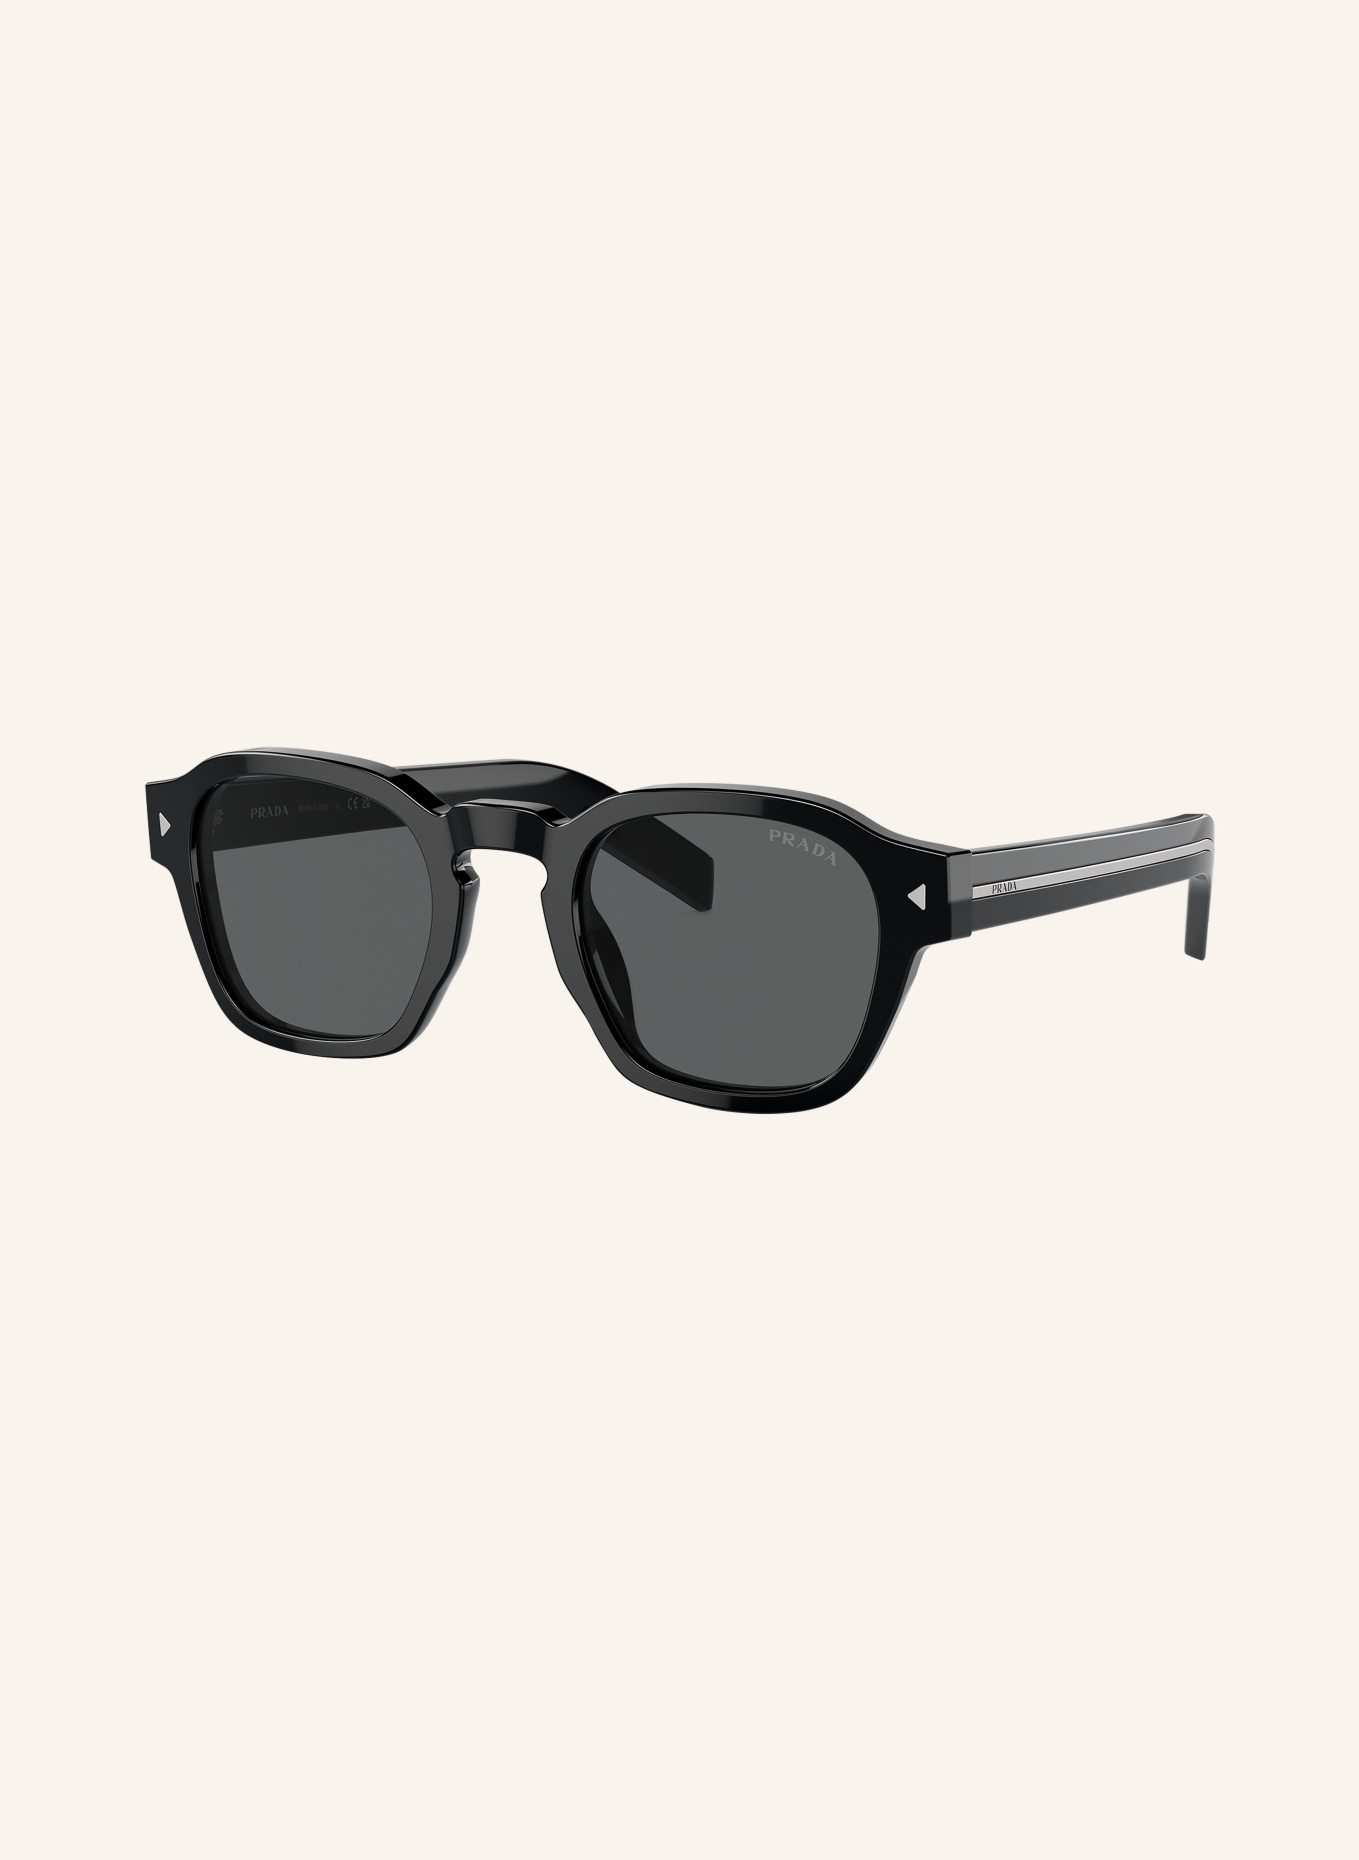 PRADA Sunglasses PRA16S, Color: 16K731 - BLACK/ DARK GRAY (Image 1)